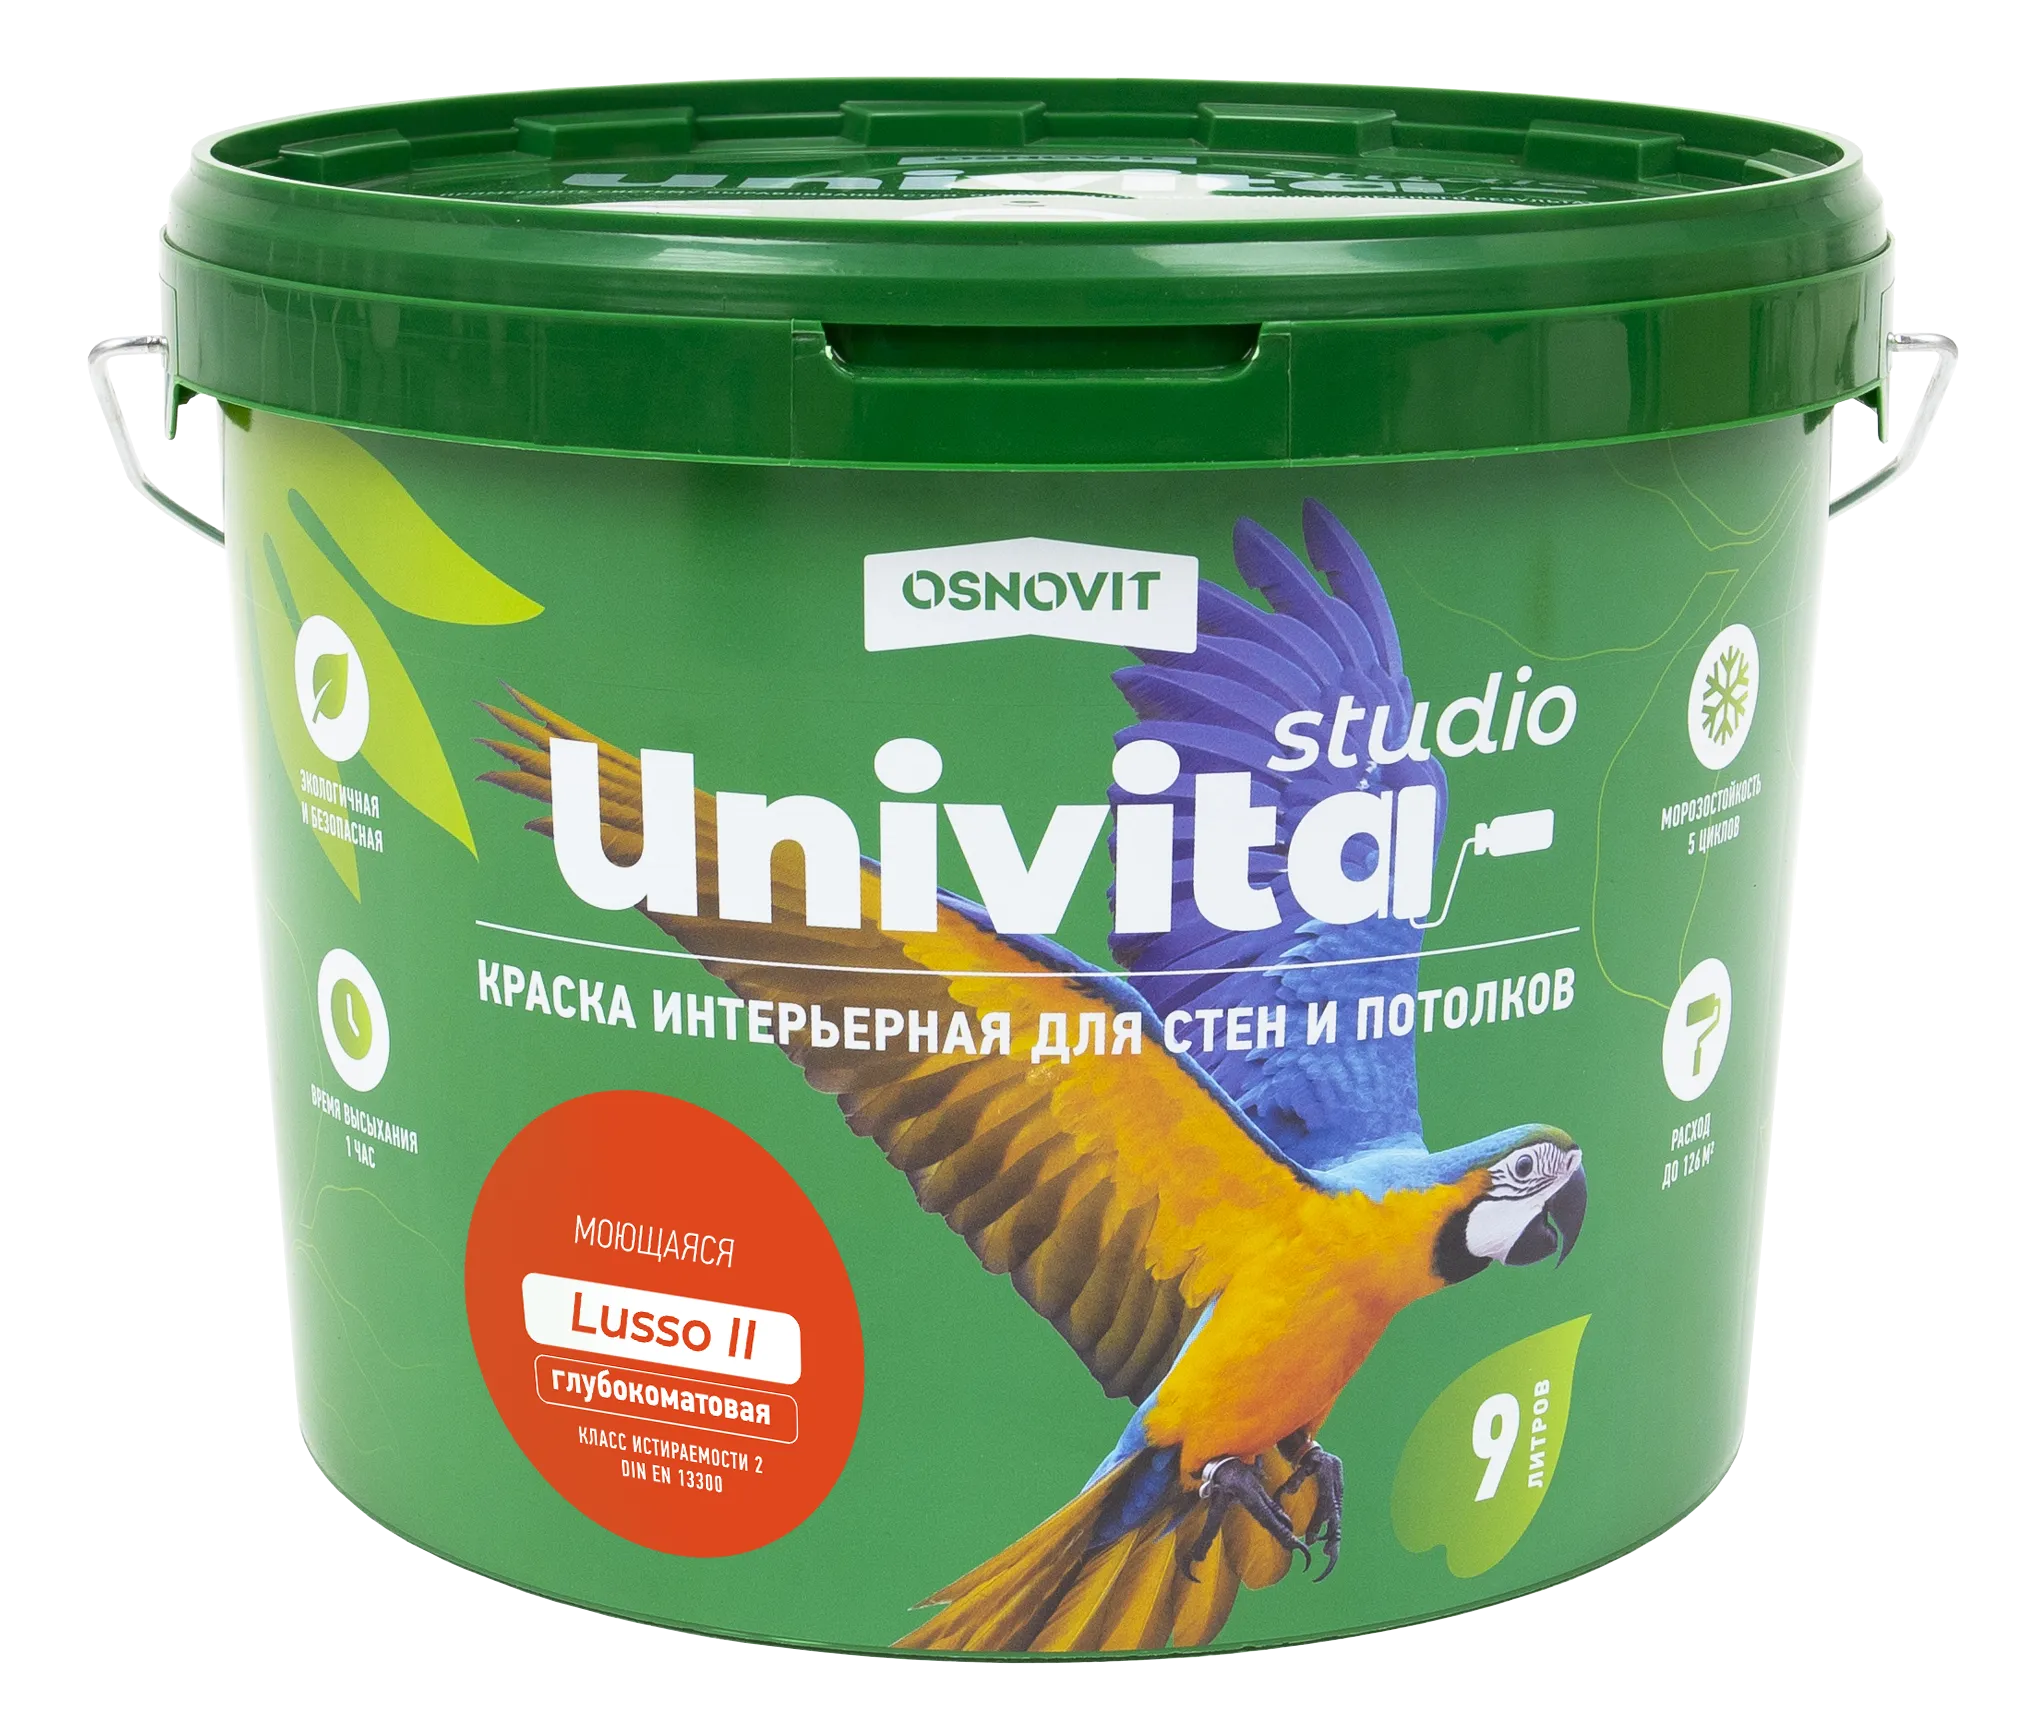 Интерьерная краска глубокоматовая моющаяся для стен и потолков ОСНОВИТ UNIVITA STUDIO ОСНОВИТ UNIVITA STUDIO Lusso II САс992 CМ3 (База C) 2,7 л